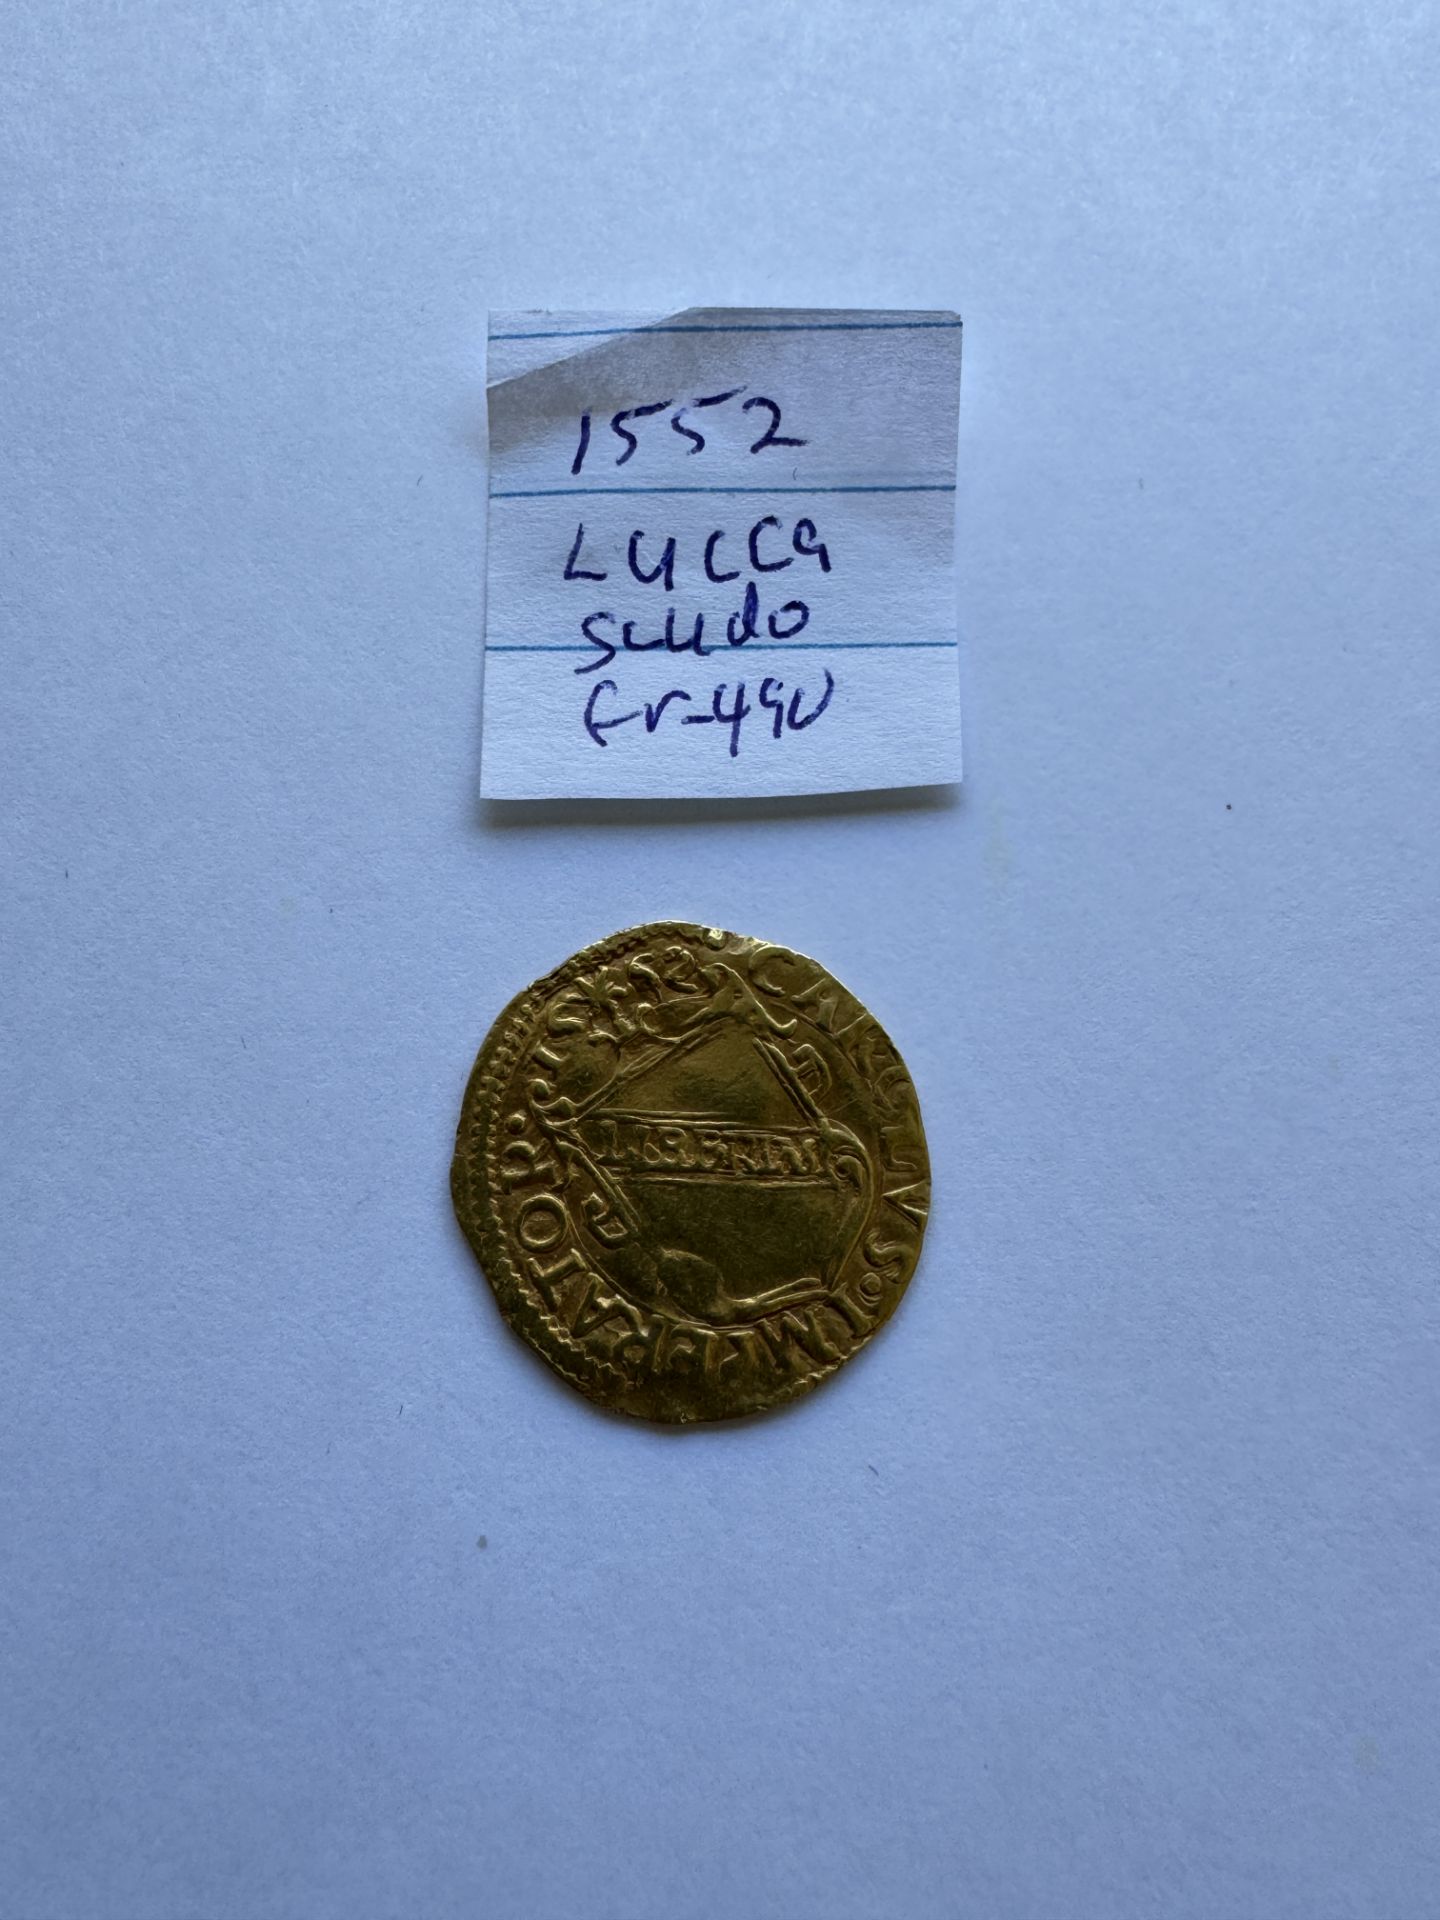 1552 LUCCA SCUDO D'ORO COIN Numista 100% rarity index - Image 2 of 2